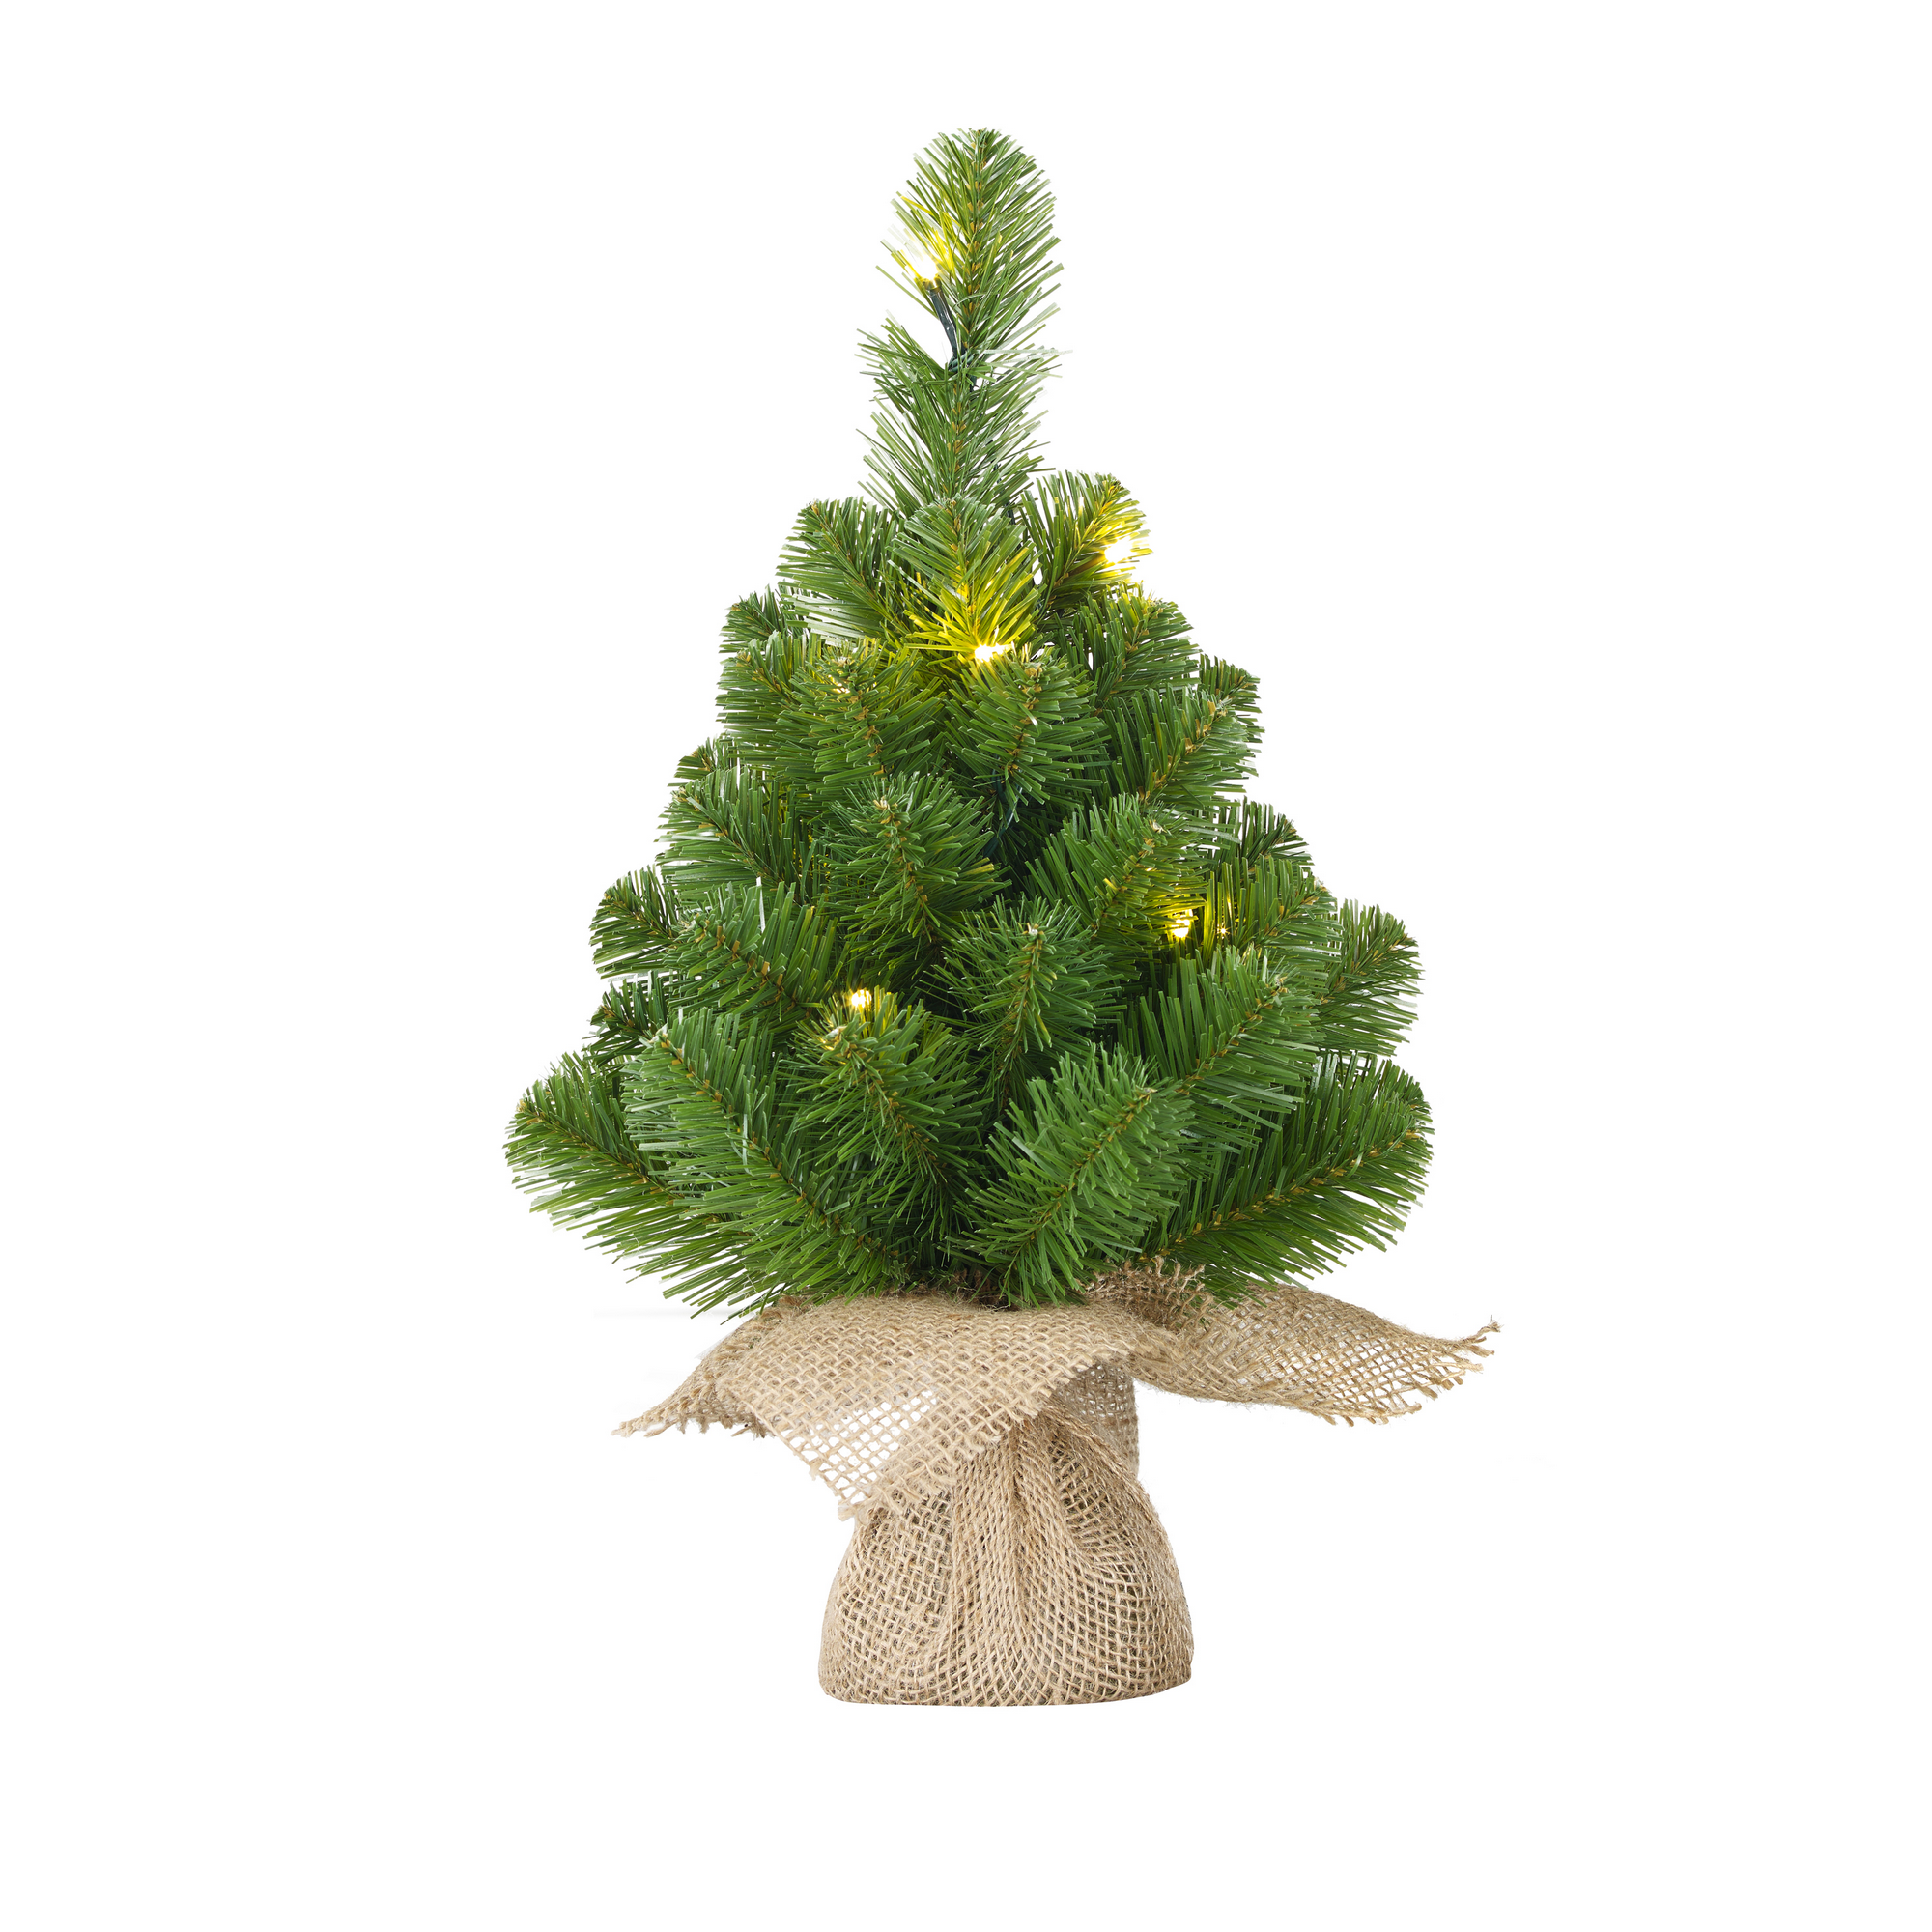 Künstlicher Weihnachtsbaum 'Norton' grün 45 cm, mit LED-Beleuchtung + product picture